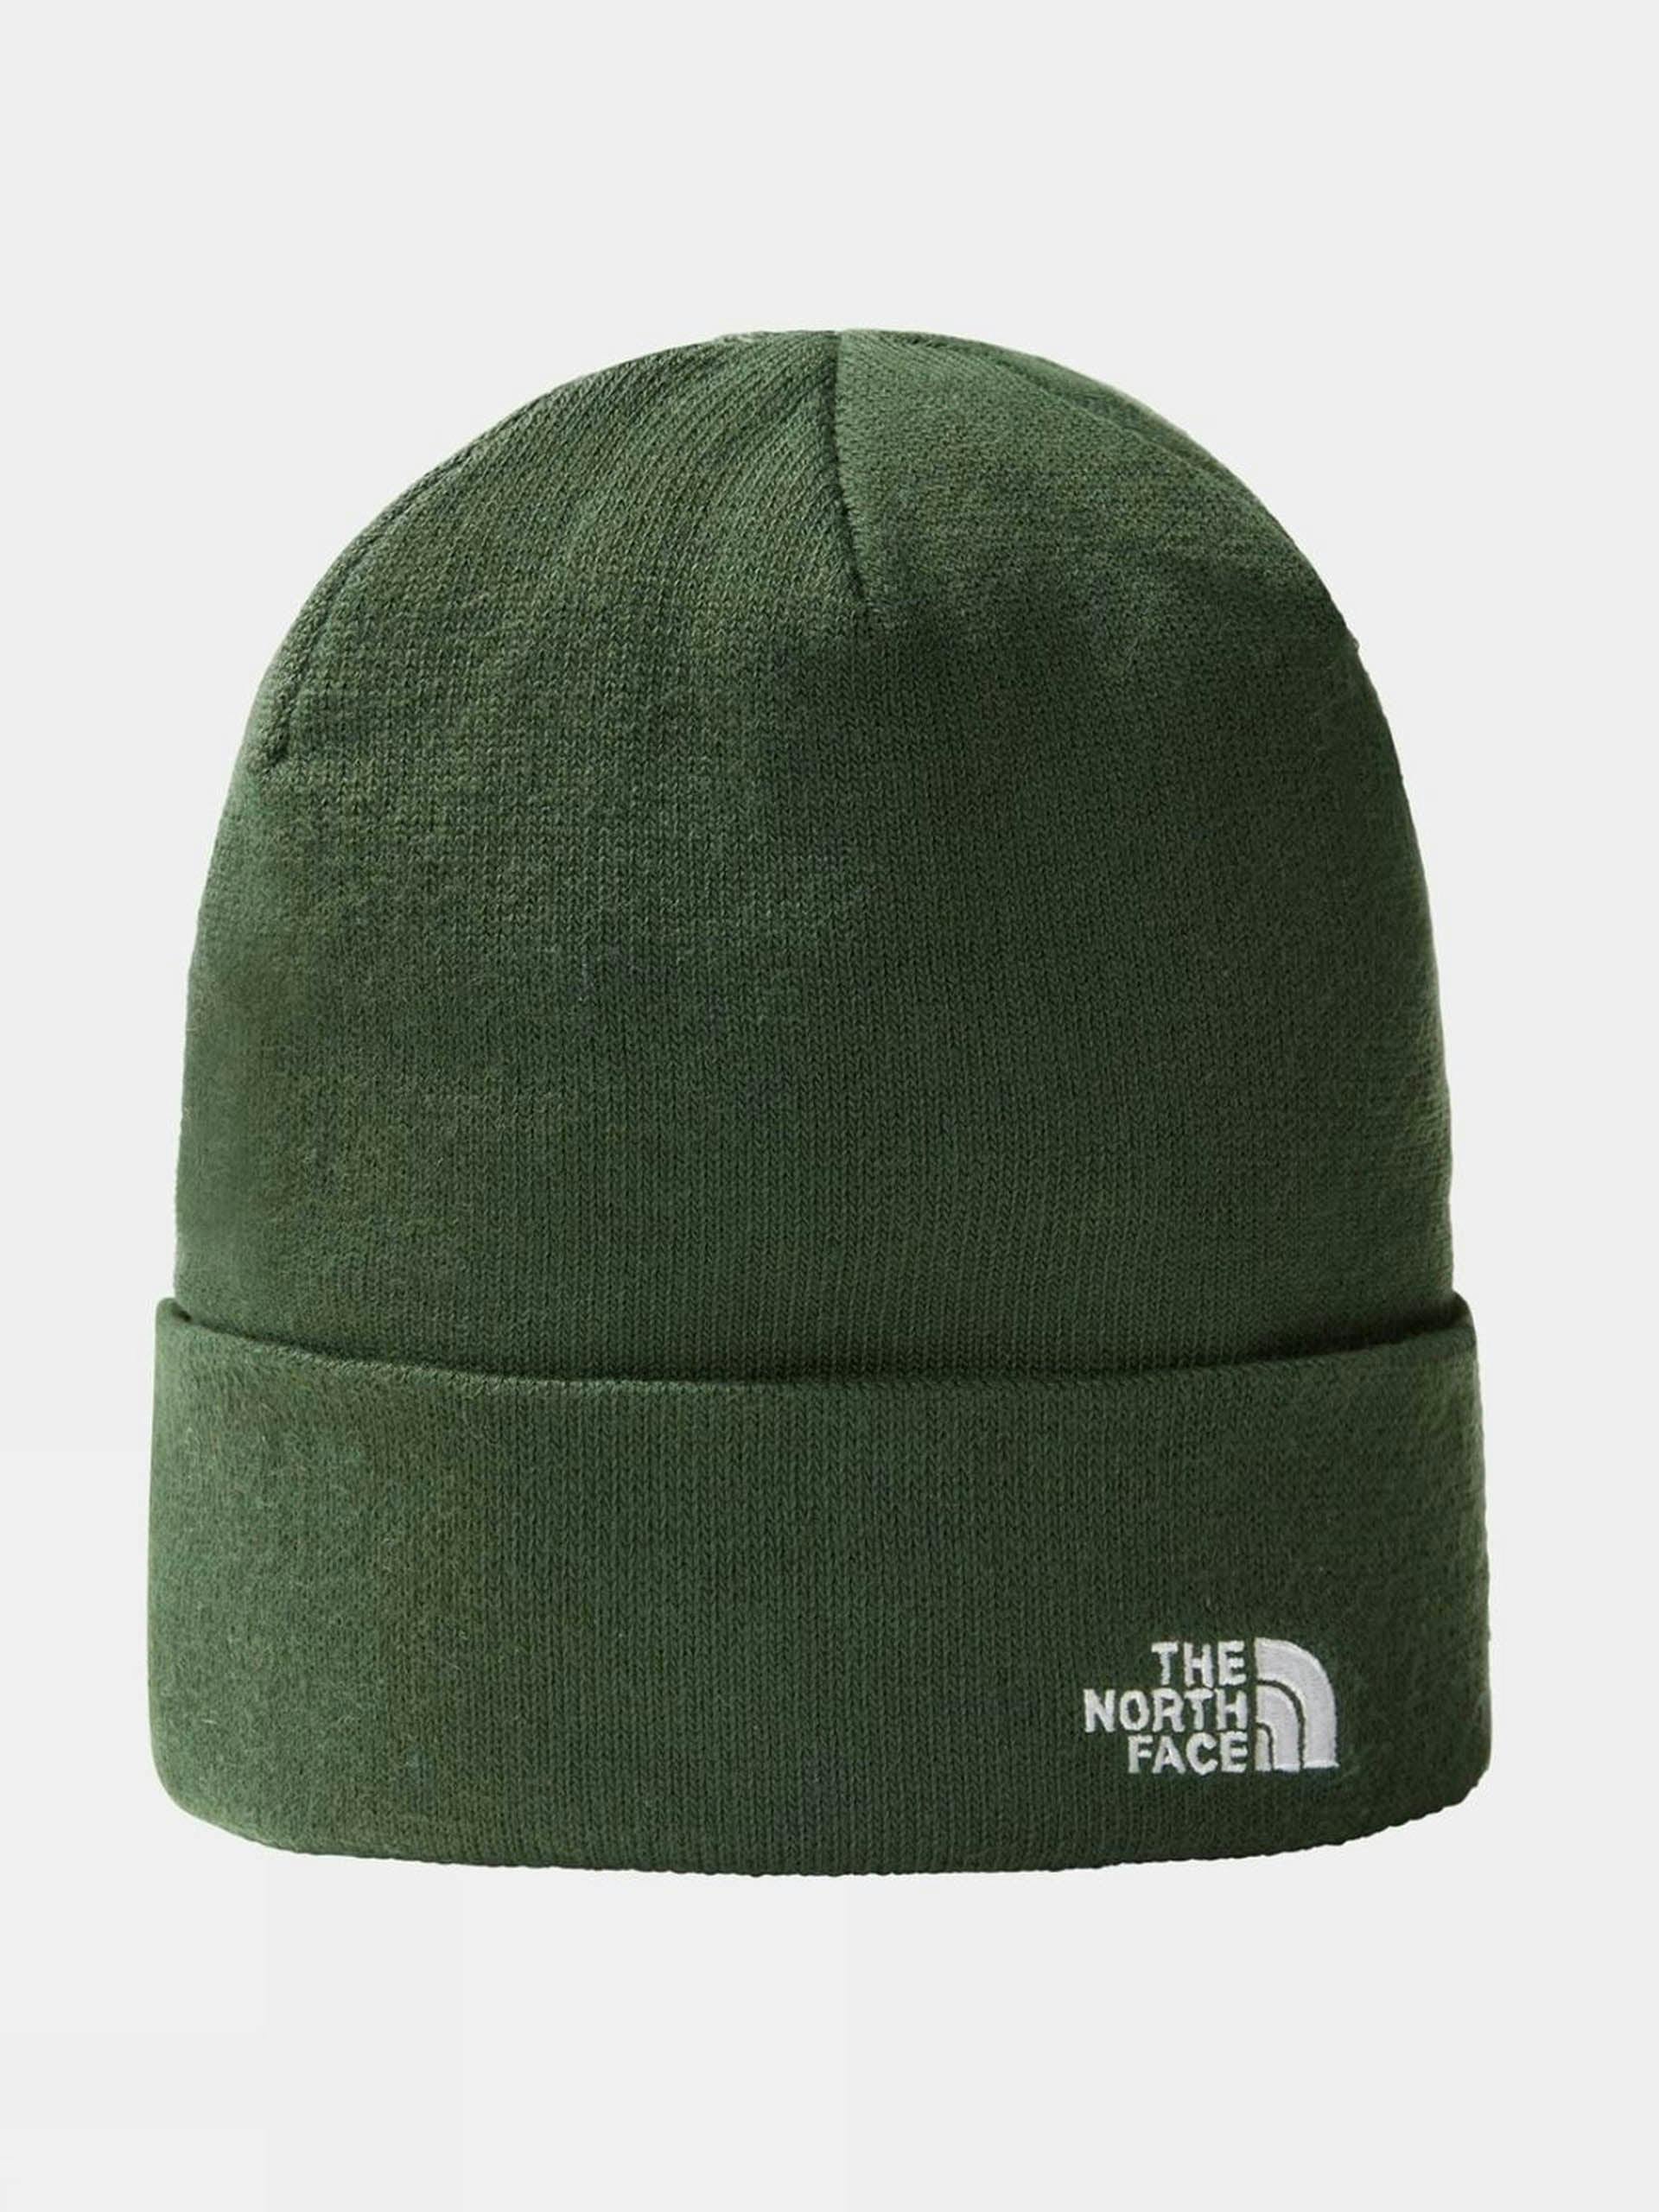 Green beanie hat